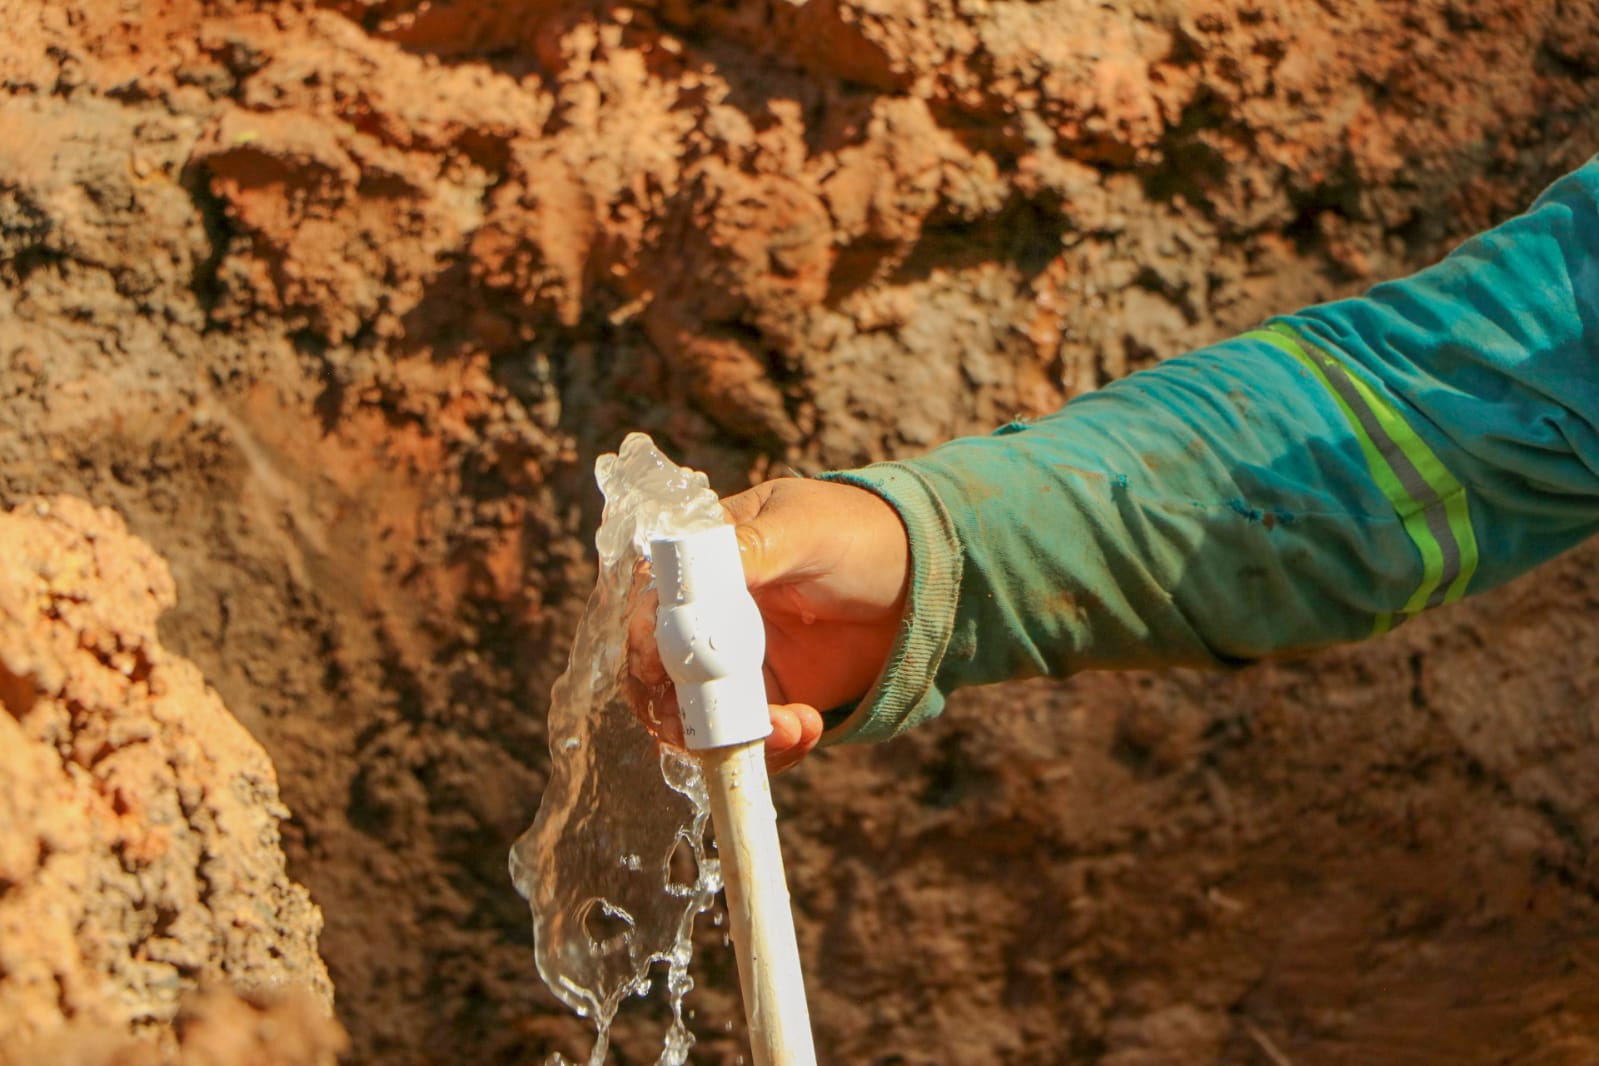 dom-continua-trabajos-para-llevar-agua-potable-a-habitantes-de-chalatenango